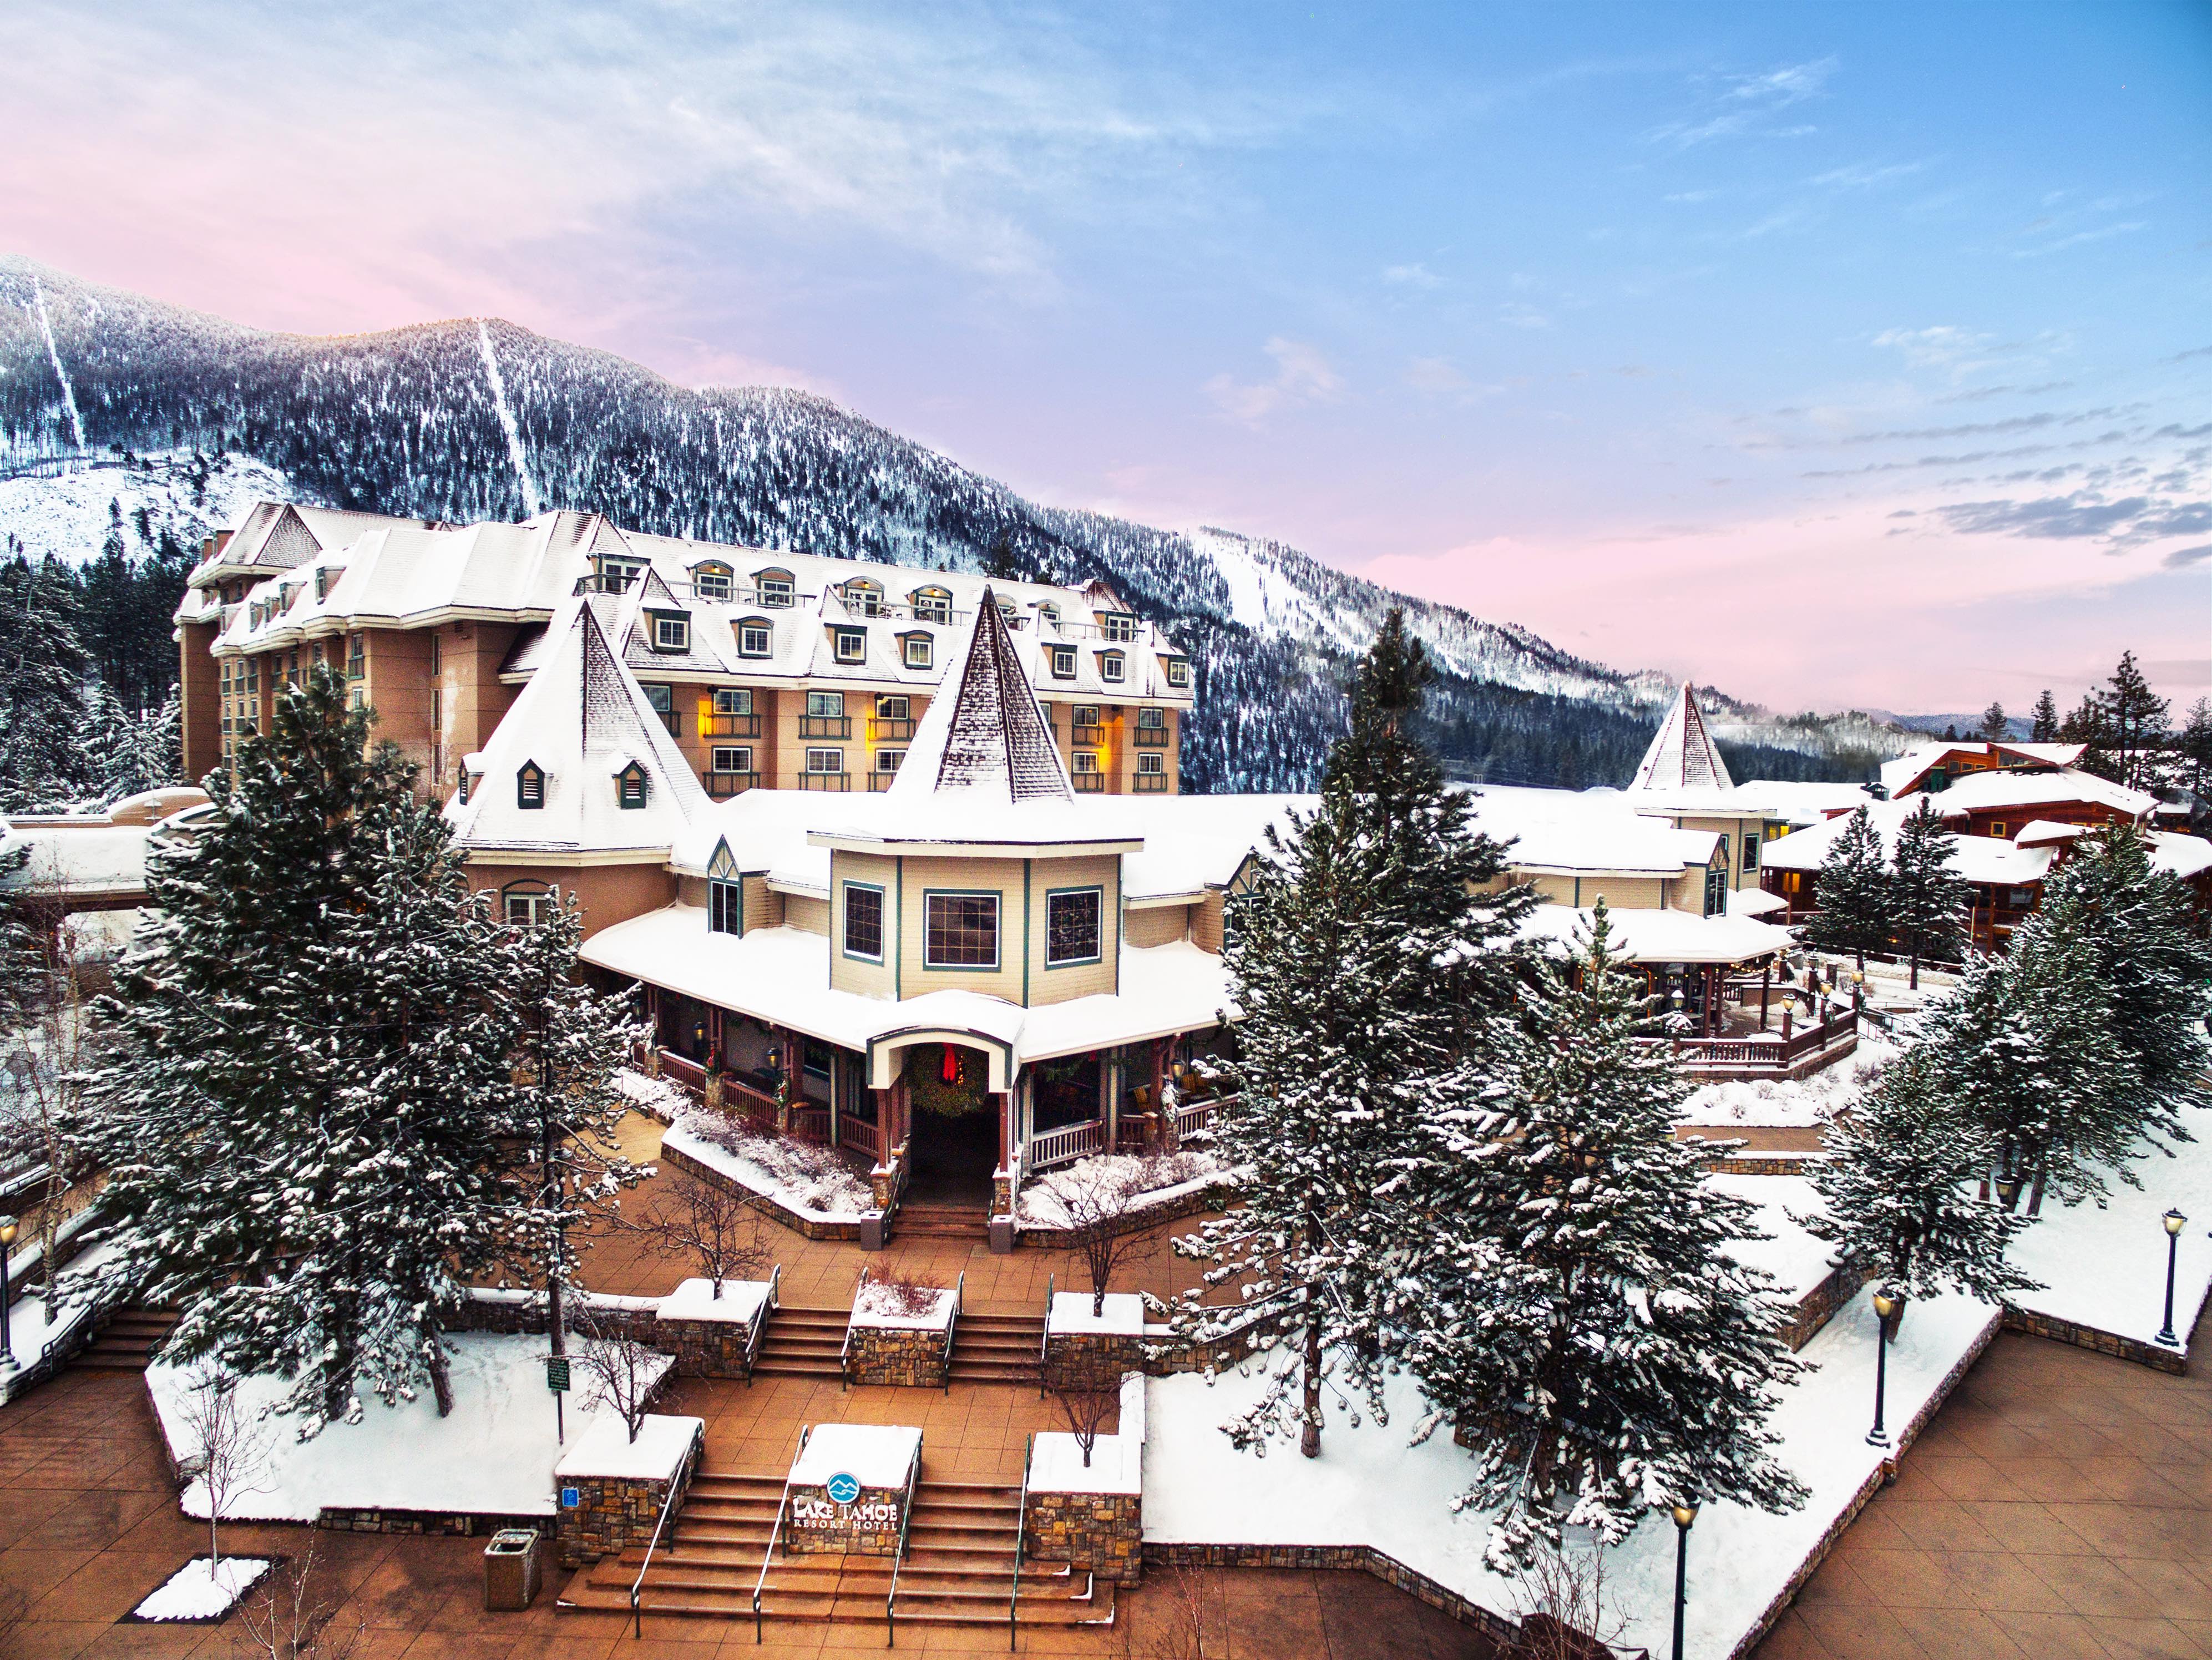 Davidson to manage Lake Tahoe Resort Hotel Hotel Management